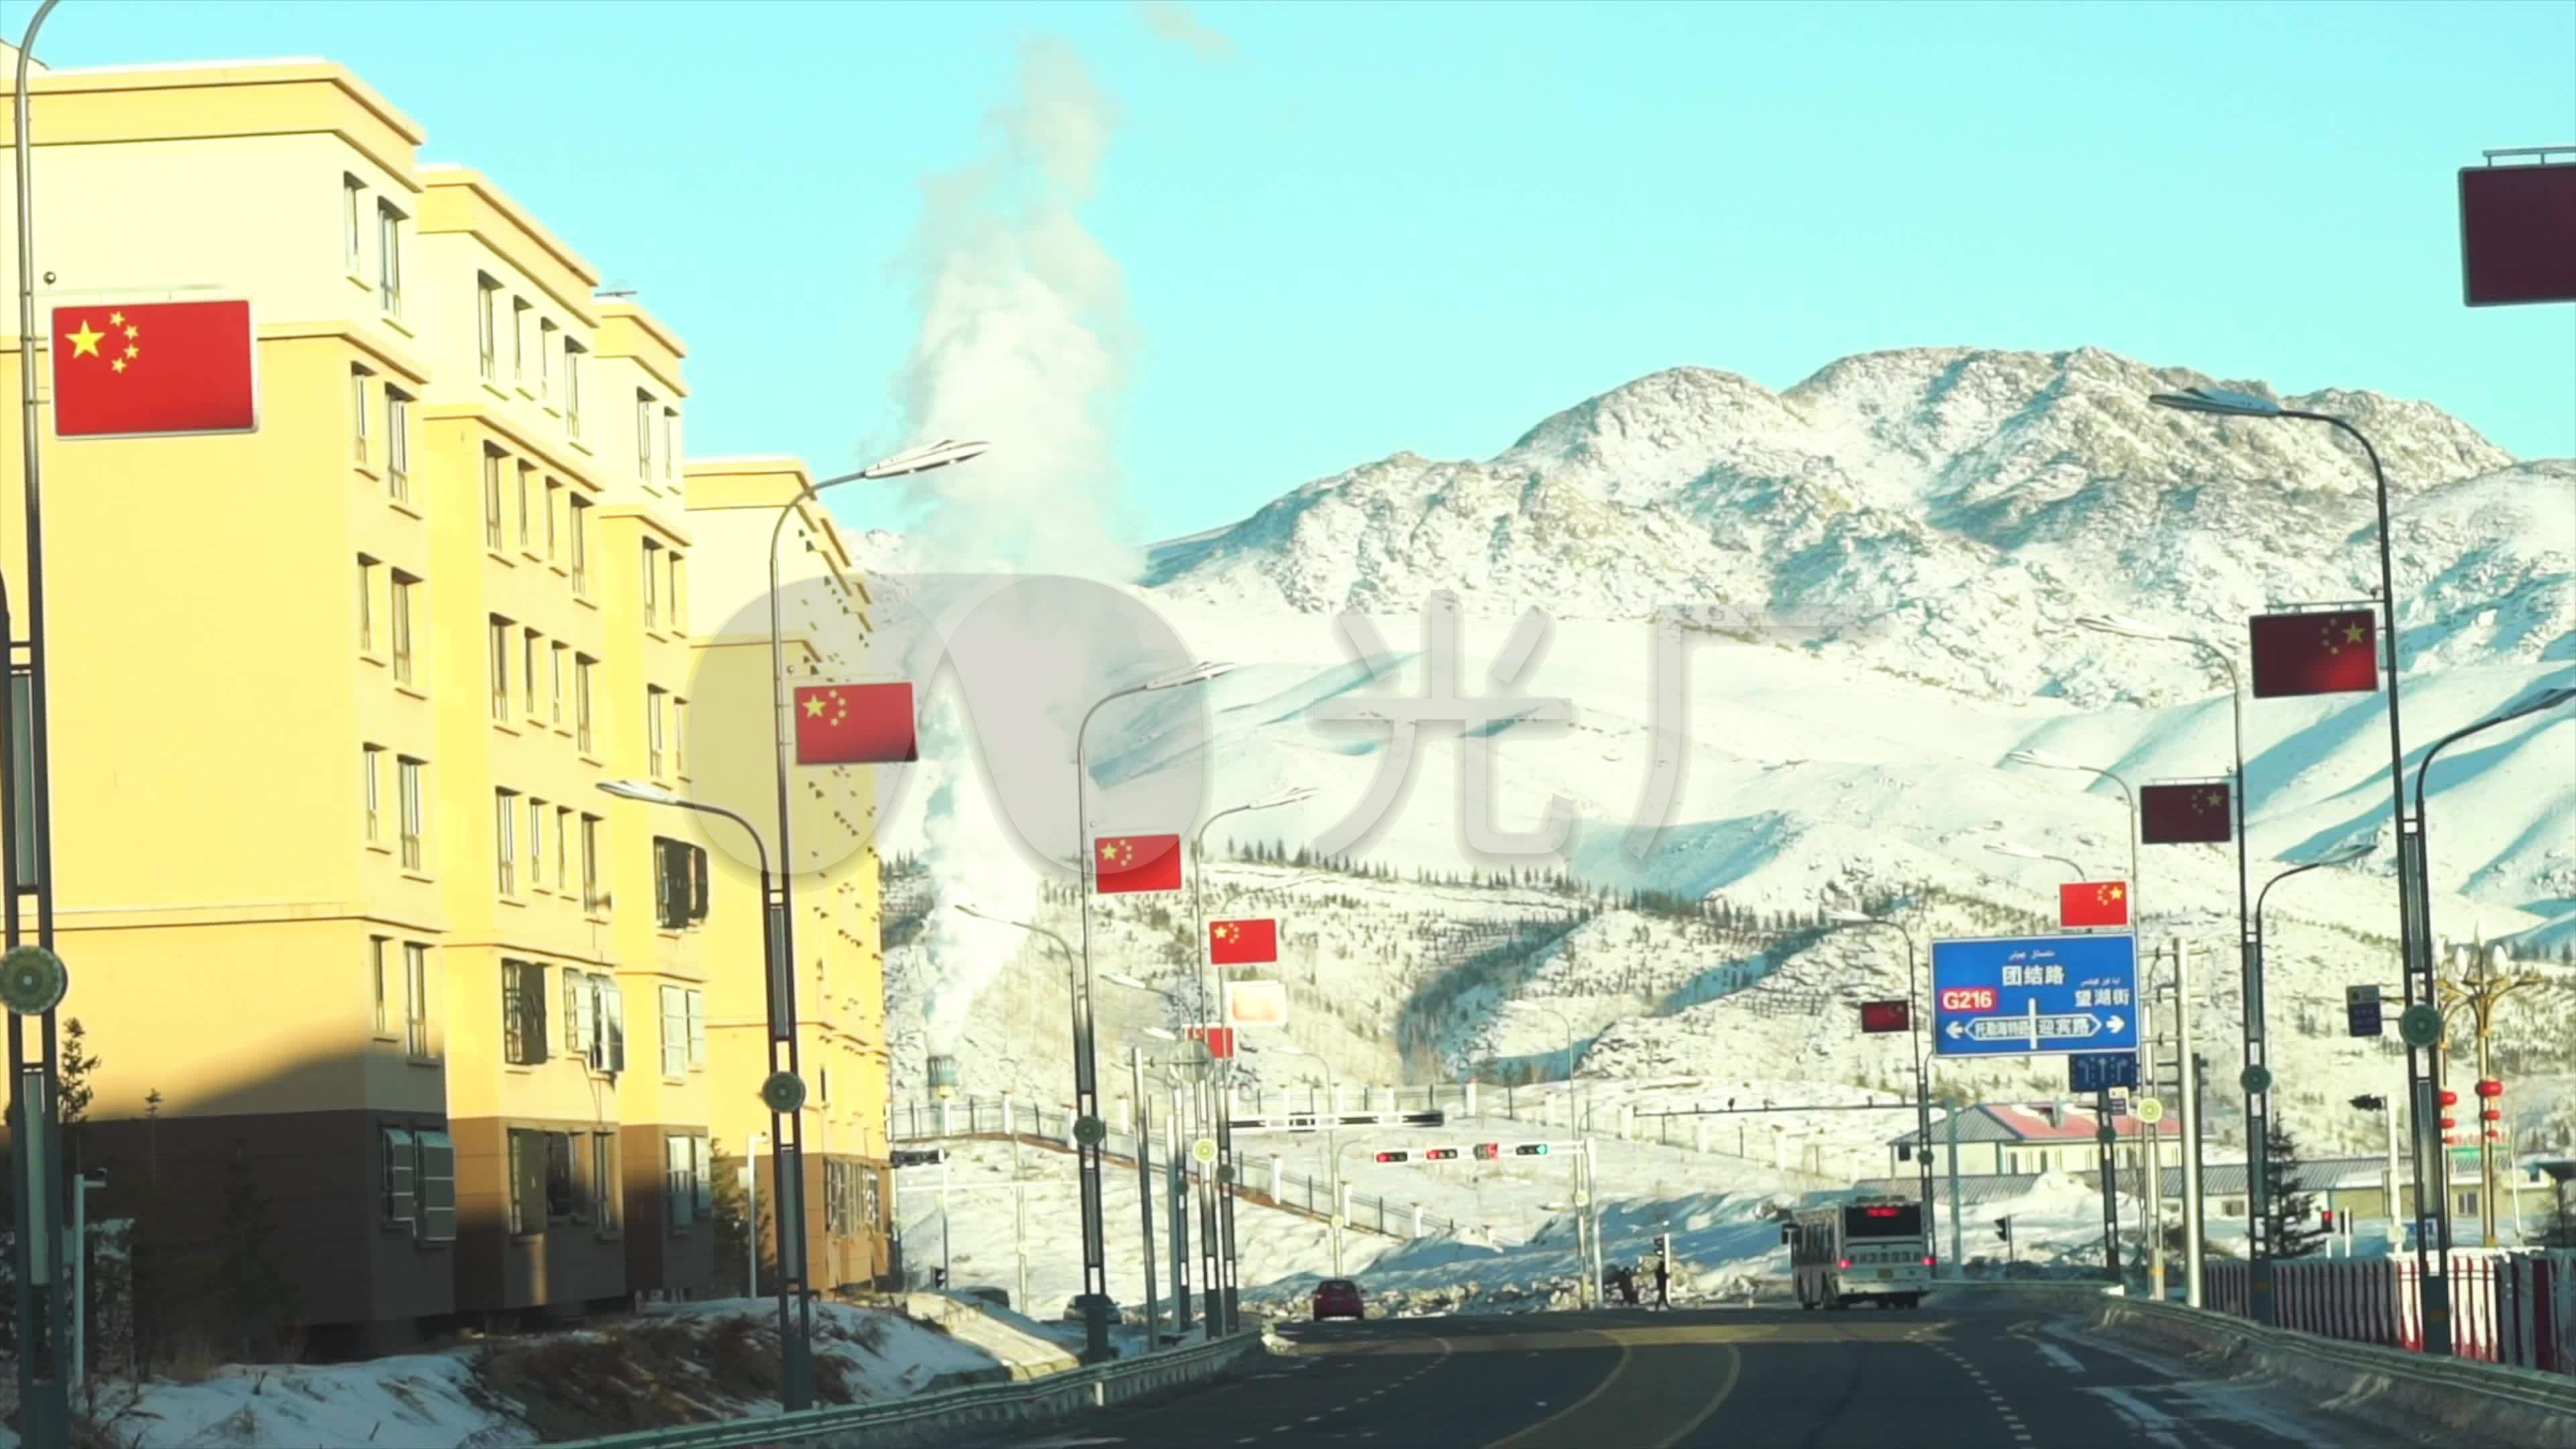 净土喀纳斯 雪都阿勒泰——新疆阿勒泰地区冬季旅游推介会 上海站隆重启幕